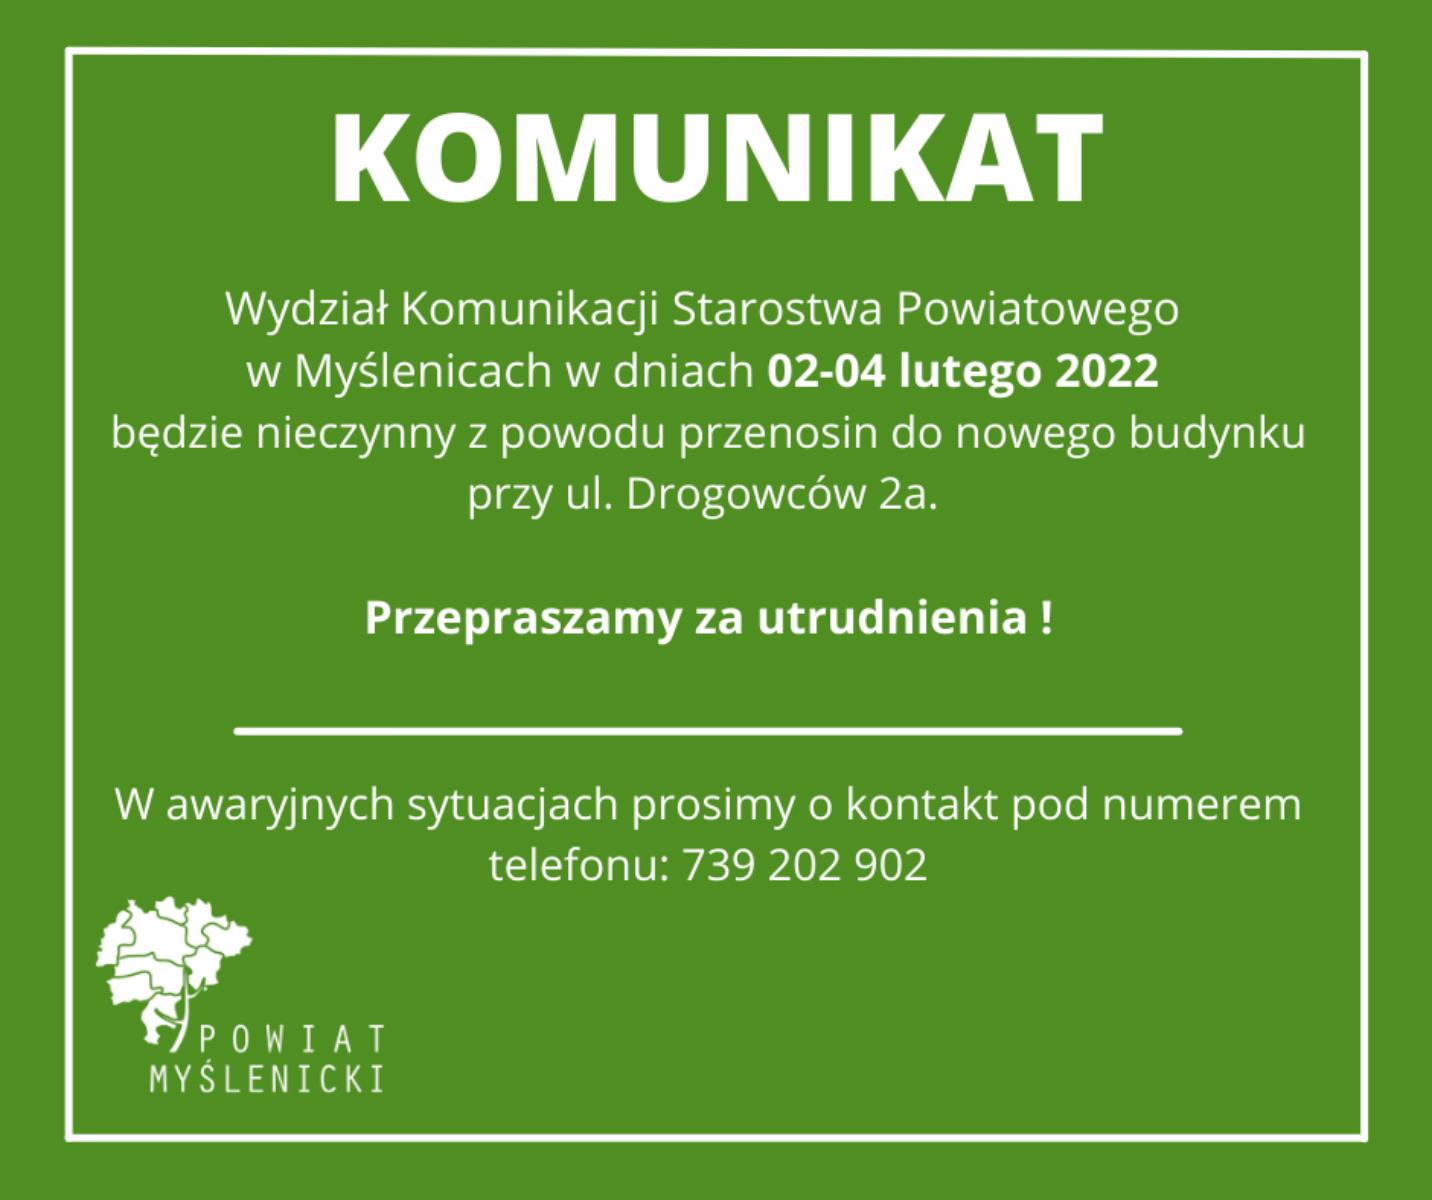 Ważny komunikat dotyczący funkcjonowania Wydziału Komunikacji Starostwa Powiatowego w Myślenicach